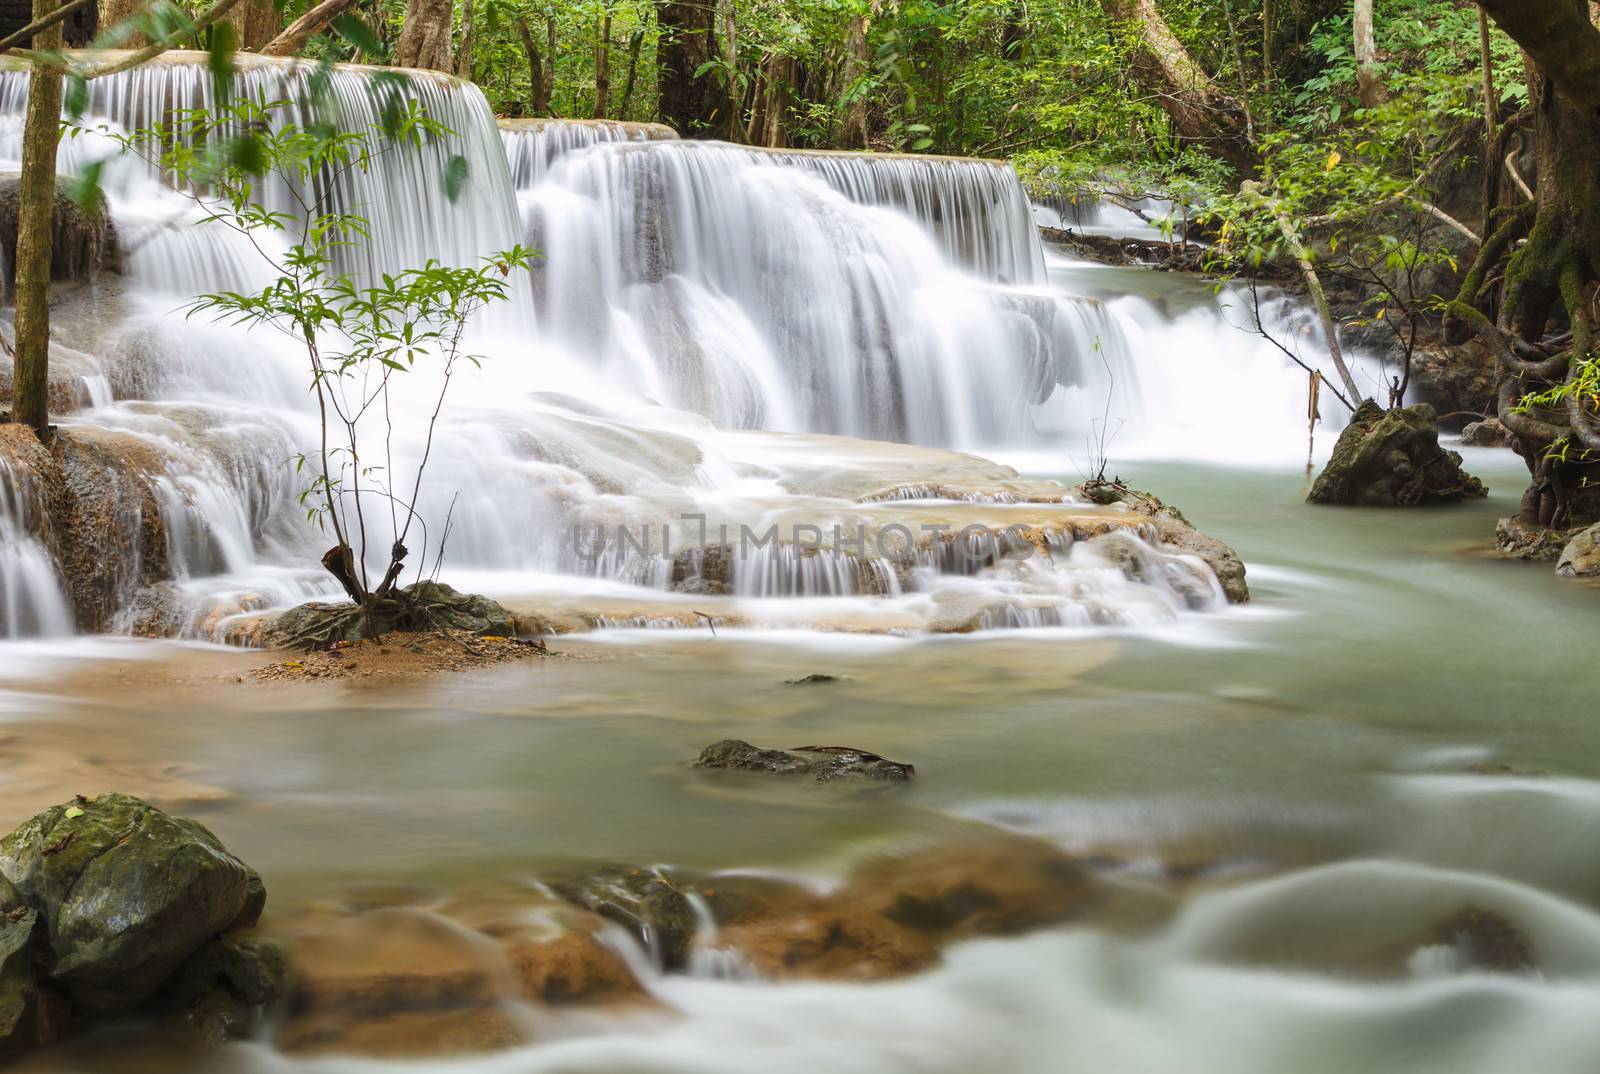 Huai Mae Kamin Waterfall in Kanchanaburi Province, Thailand